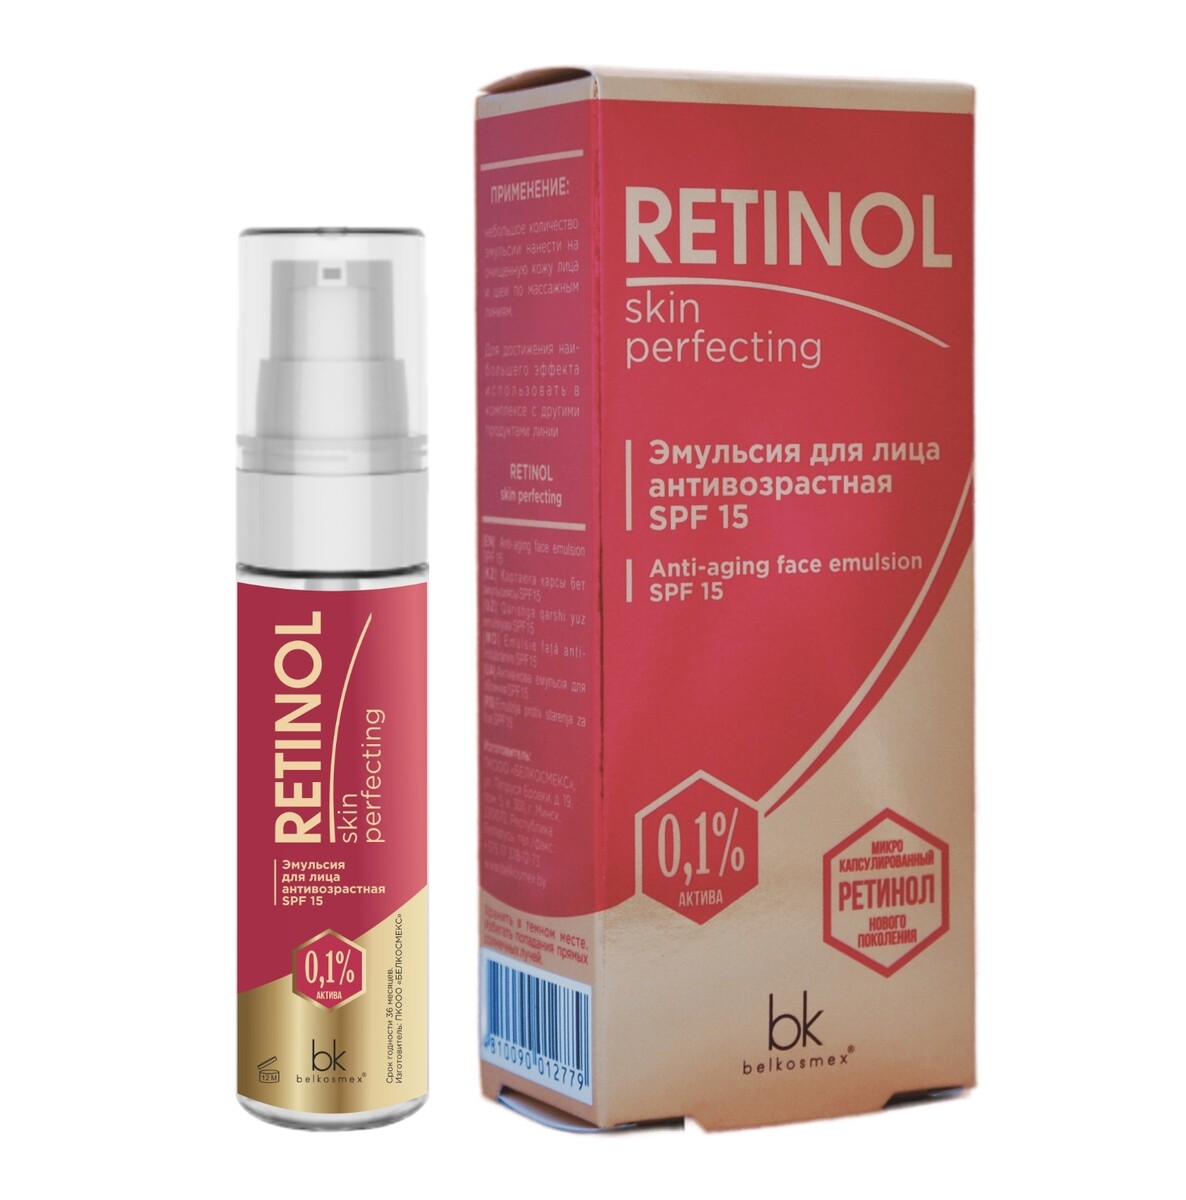 Retinol skin perfecting     spf 15 30